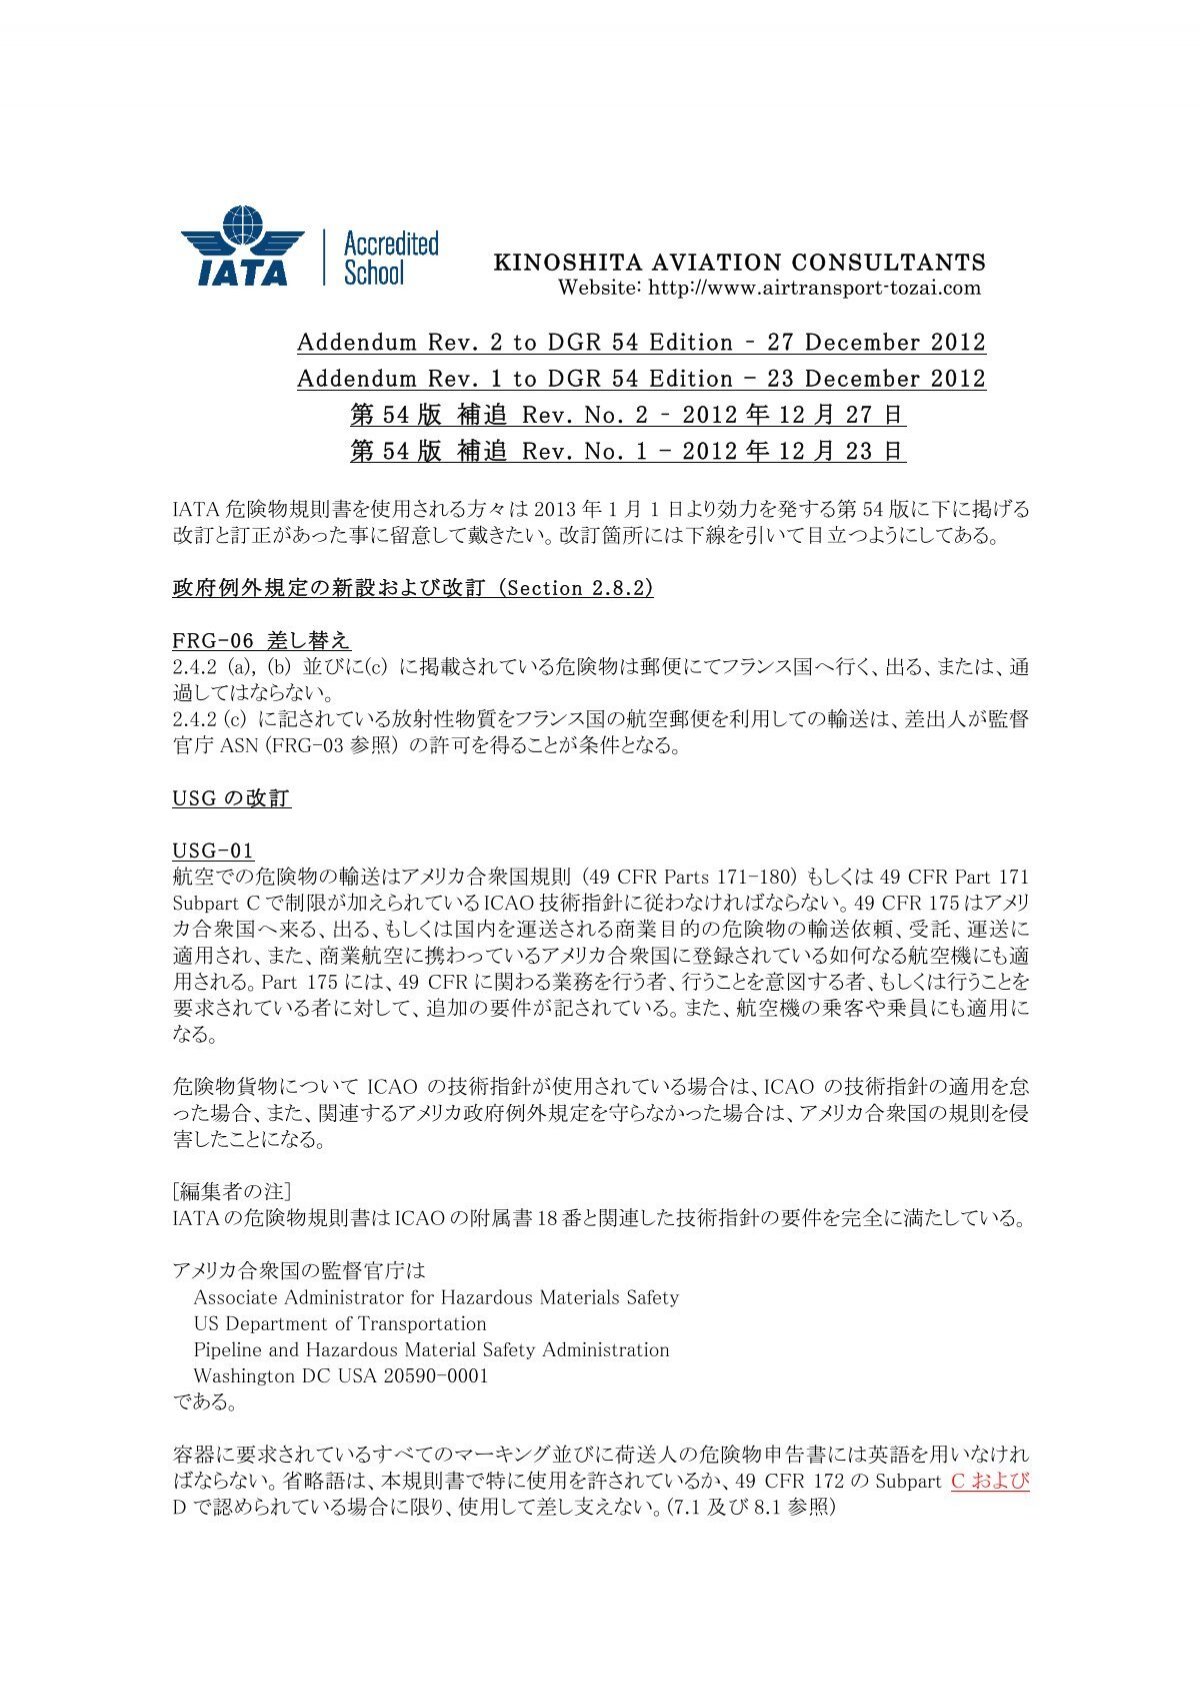 第54版 IATA危険物規則書 補追 Rev. No.2-2012年12月27日付